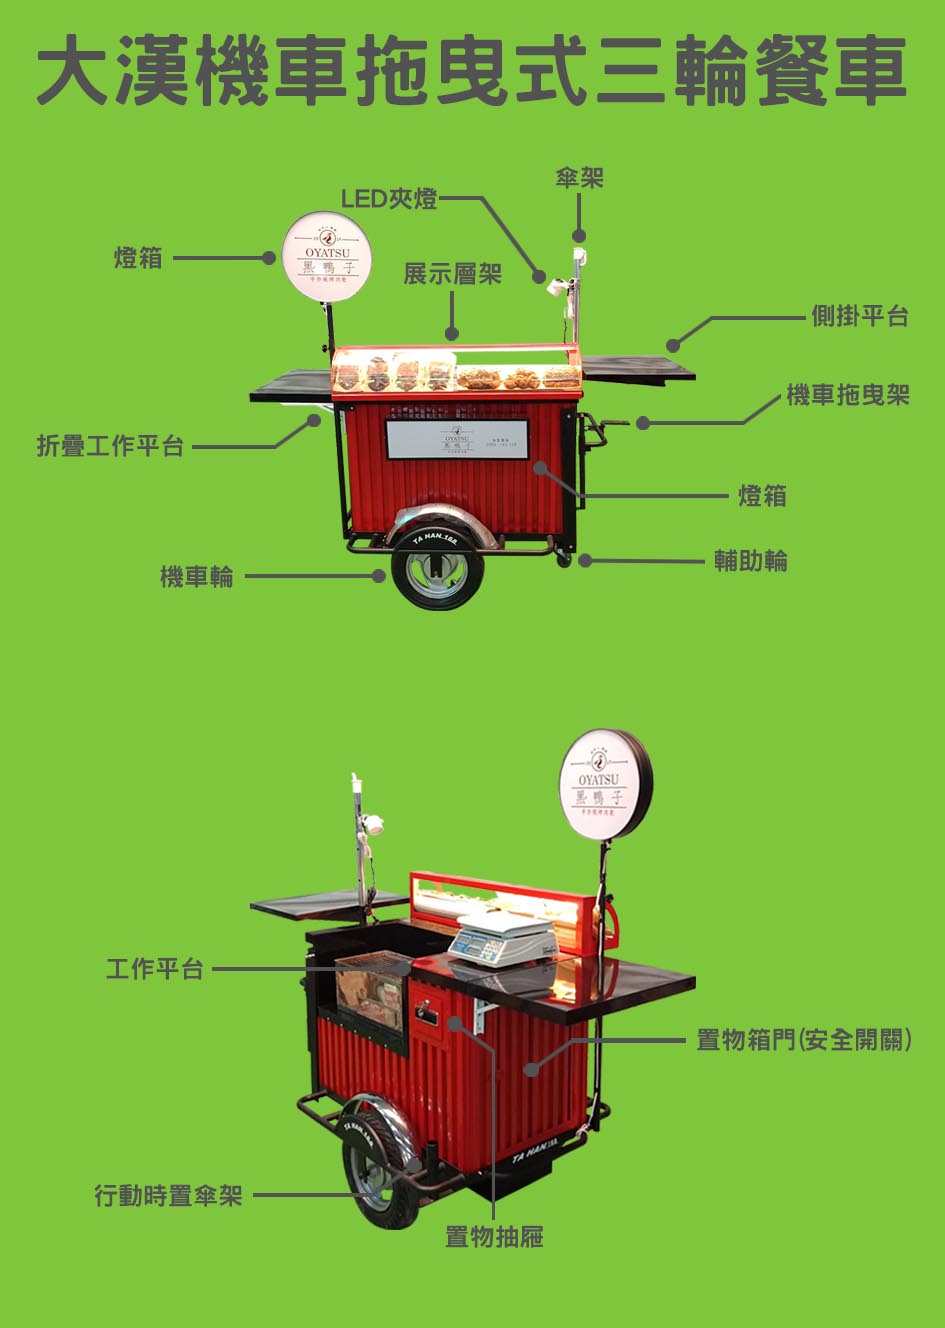 機車拖曳式三輪餐車功能說明表